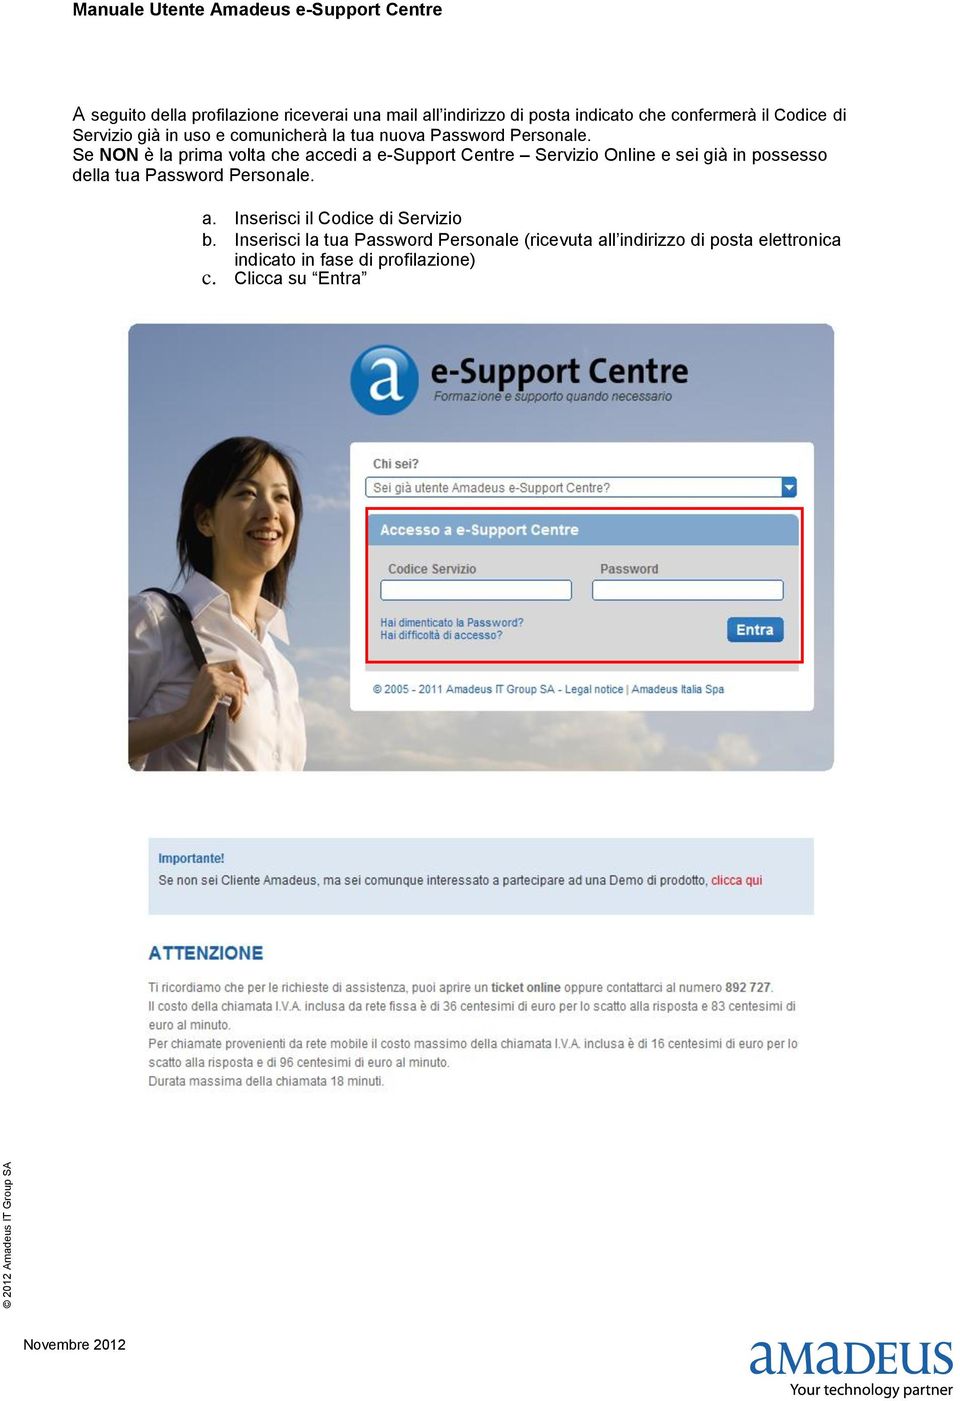 Se NON è la prima volta che accedi a e-support Centre Servizio Online e sei già in possesso della tua Password